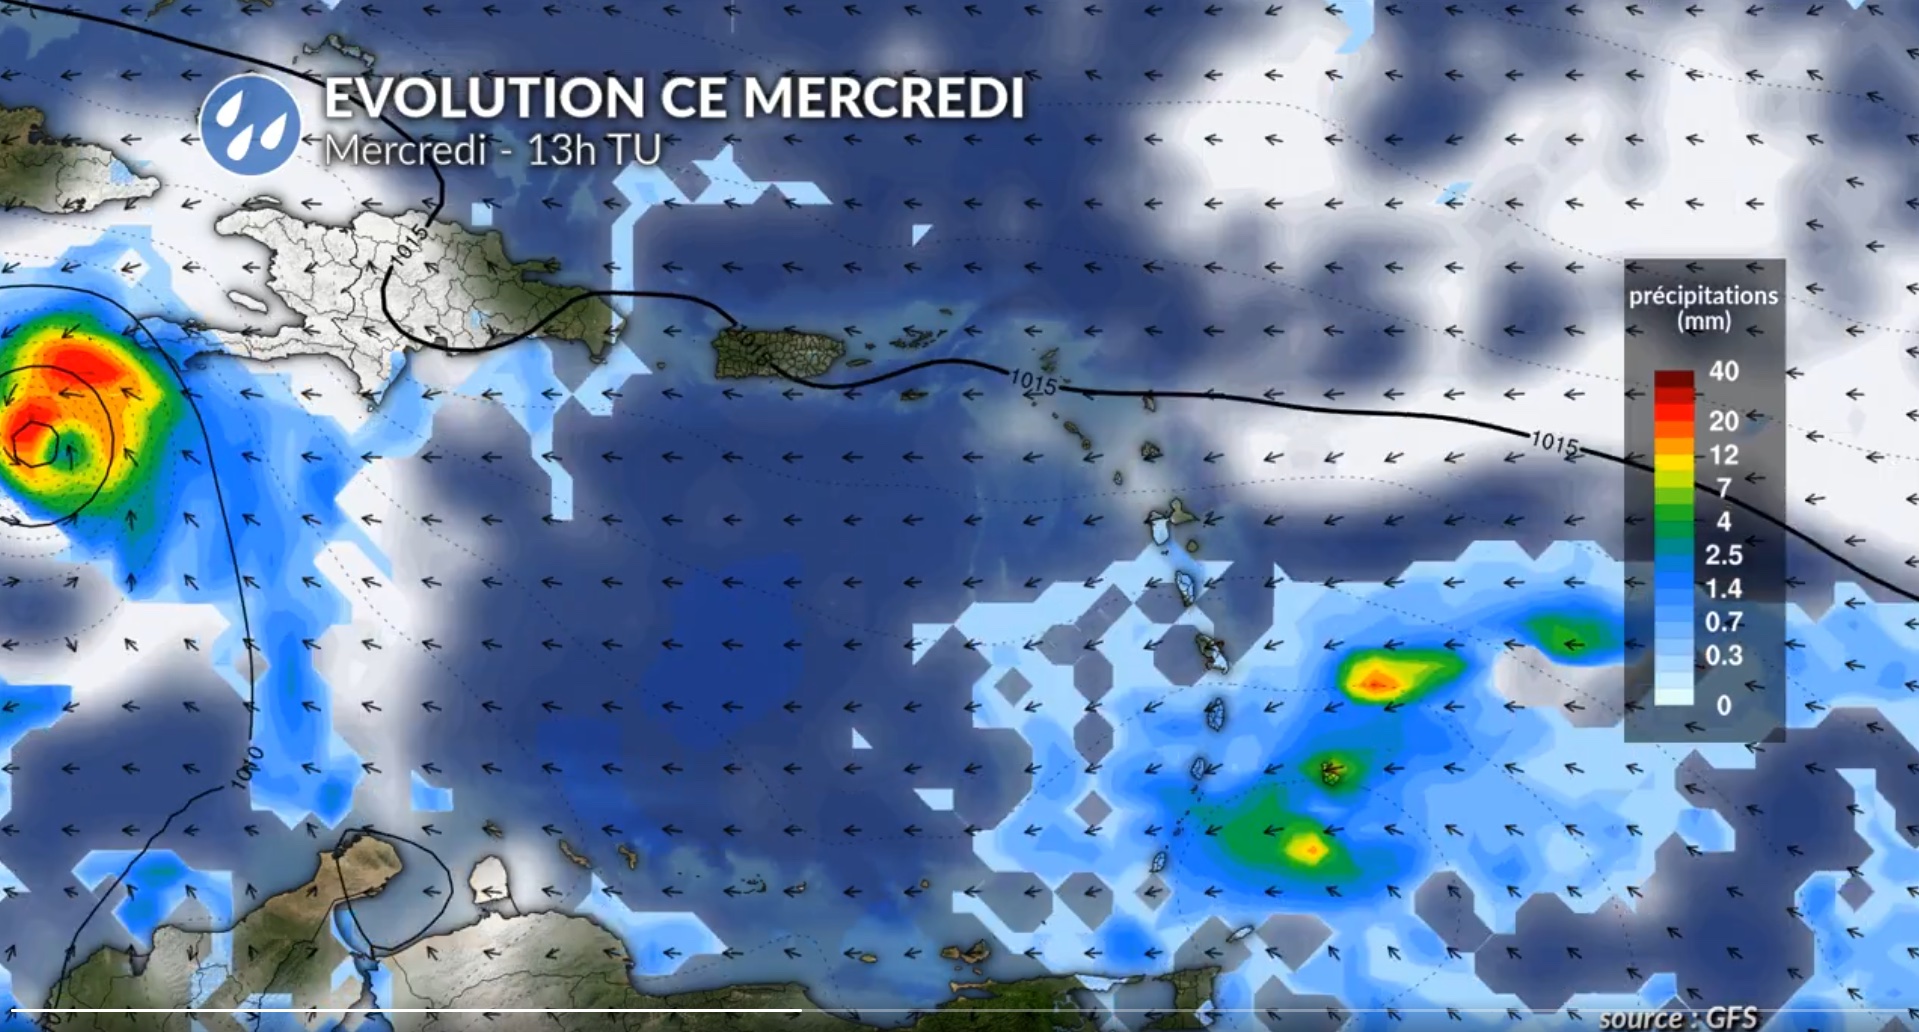     Après avoir fait 7 morts, l’ouragan Béryl s'approche à pleine vitesse de la Jamaïque

